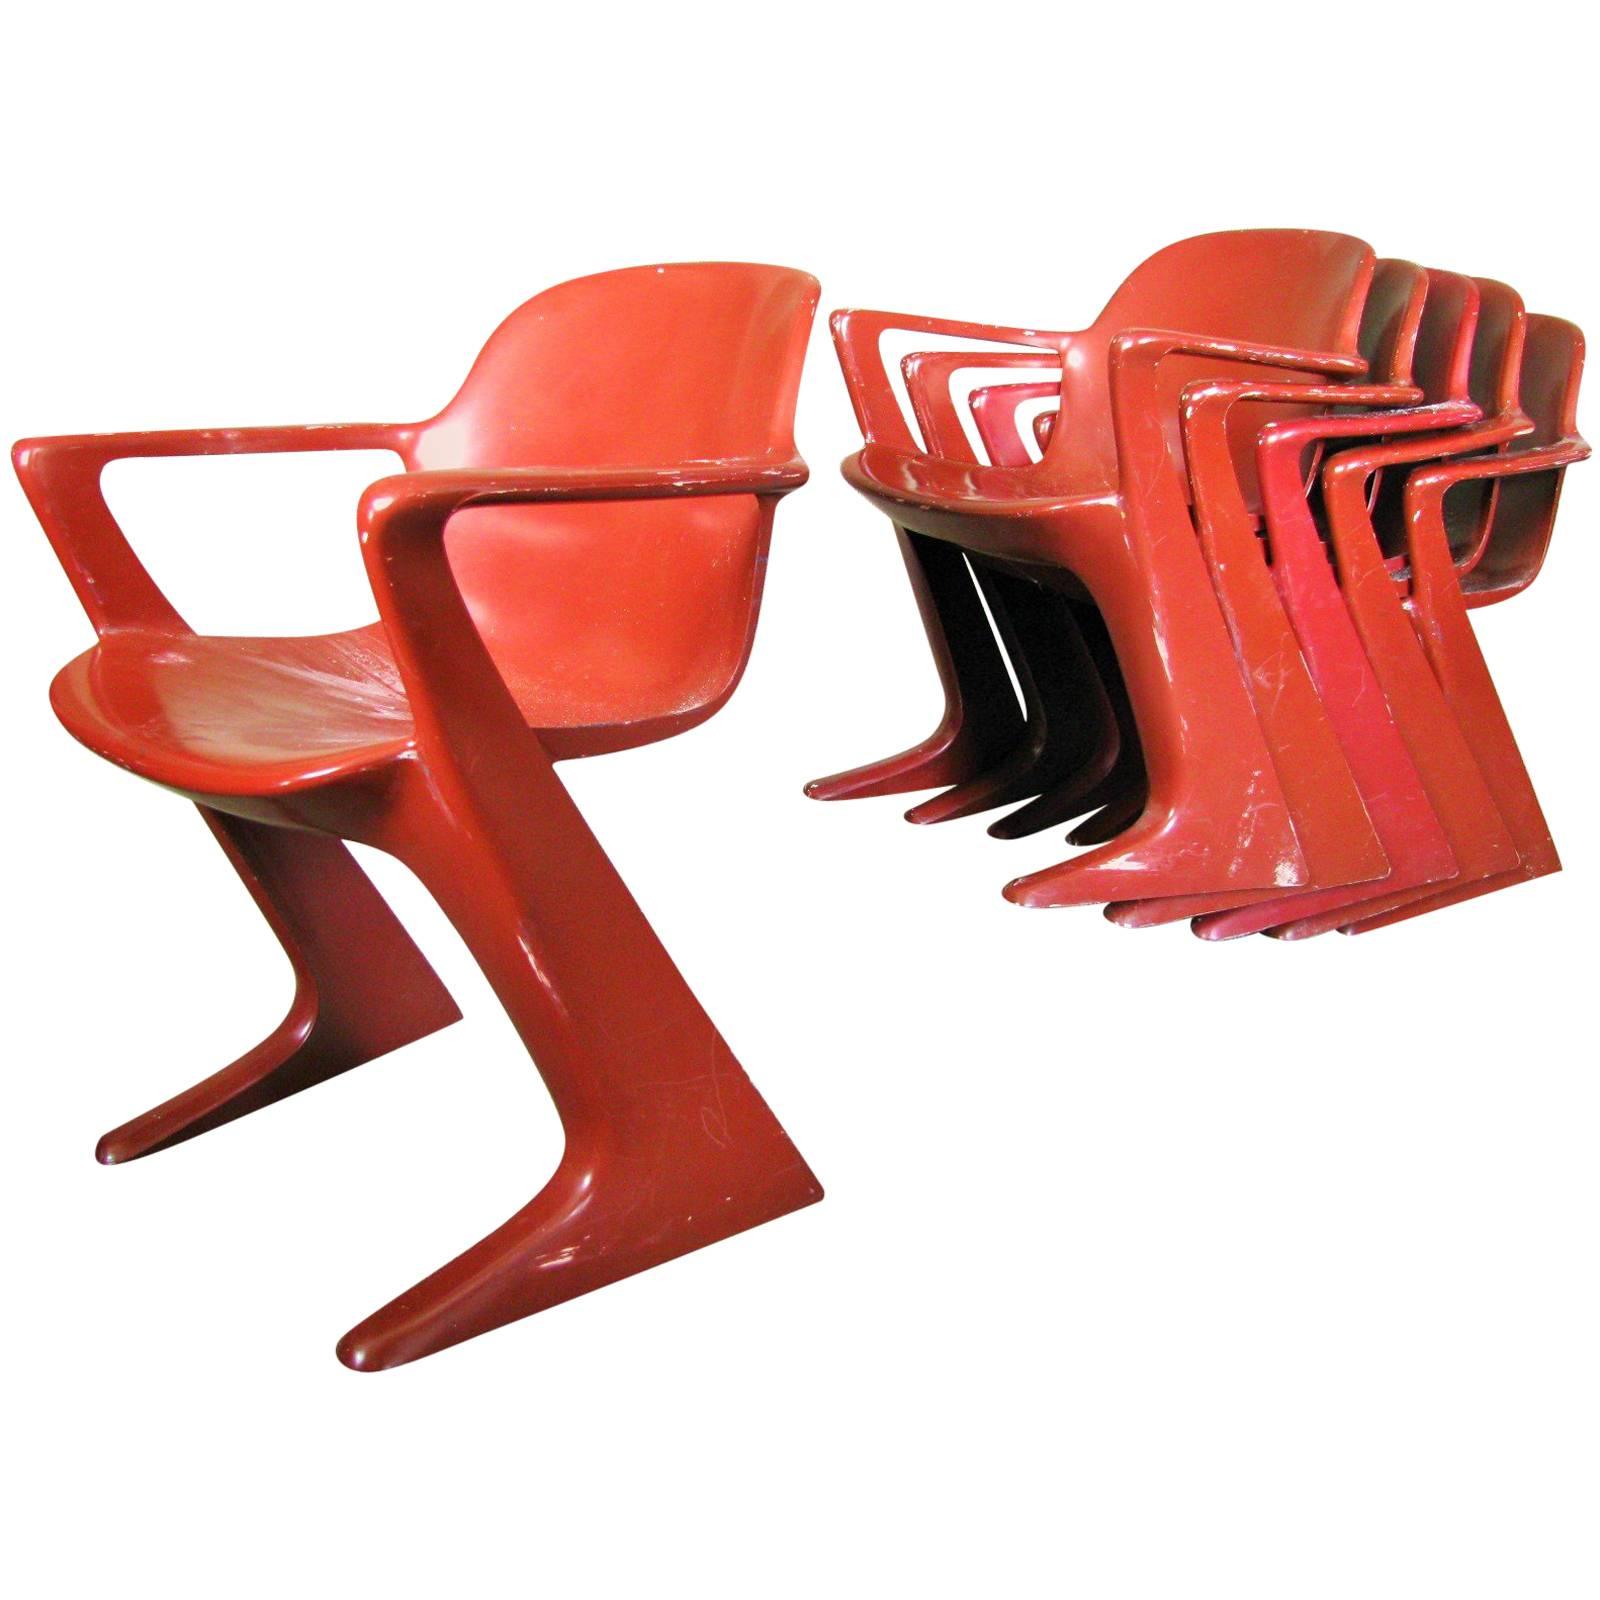 Midcentury German Kangoroo Chair by Ernst Moeckl, 1968